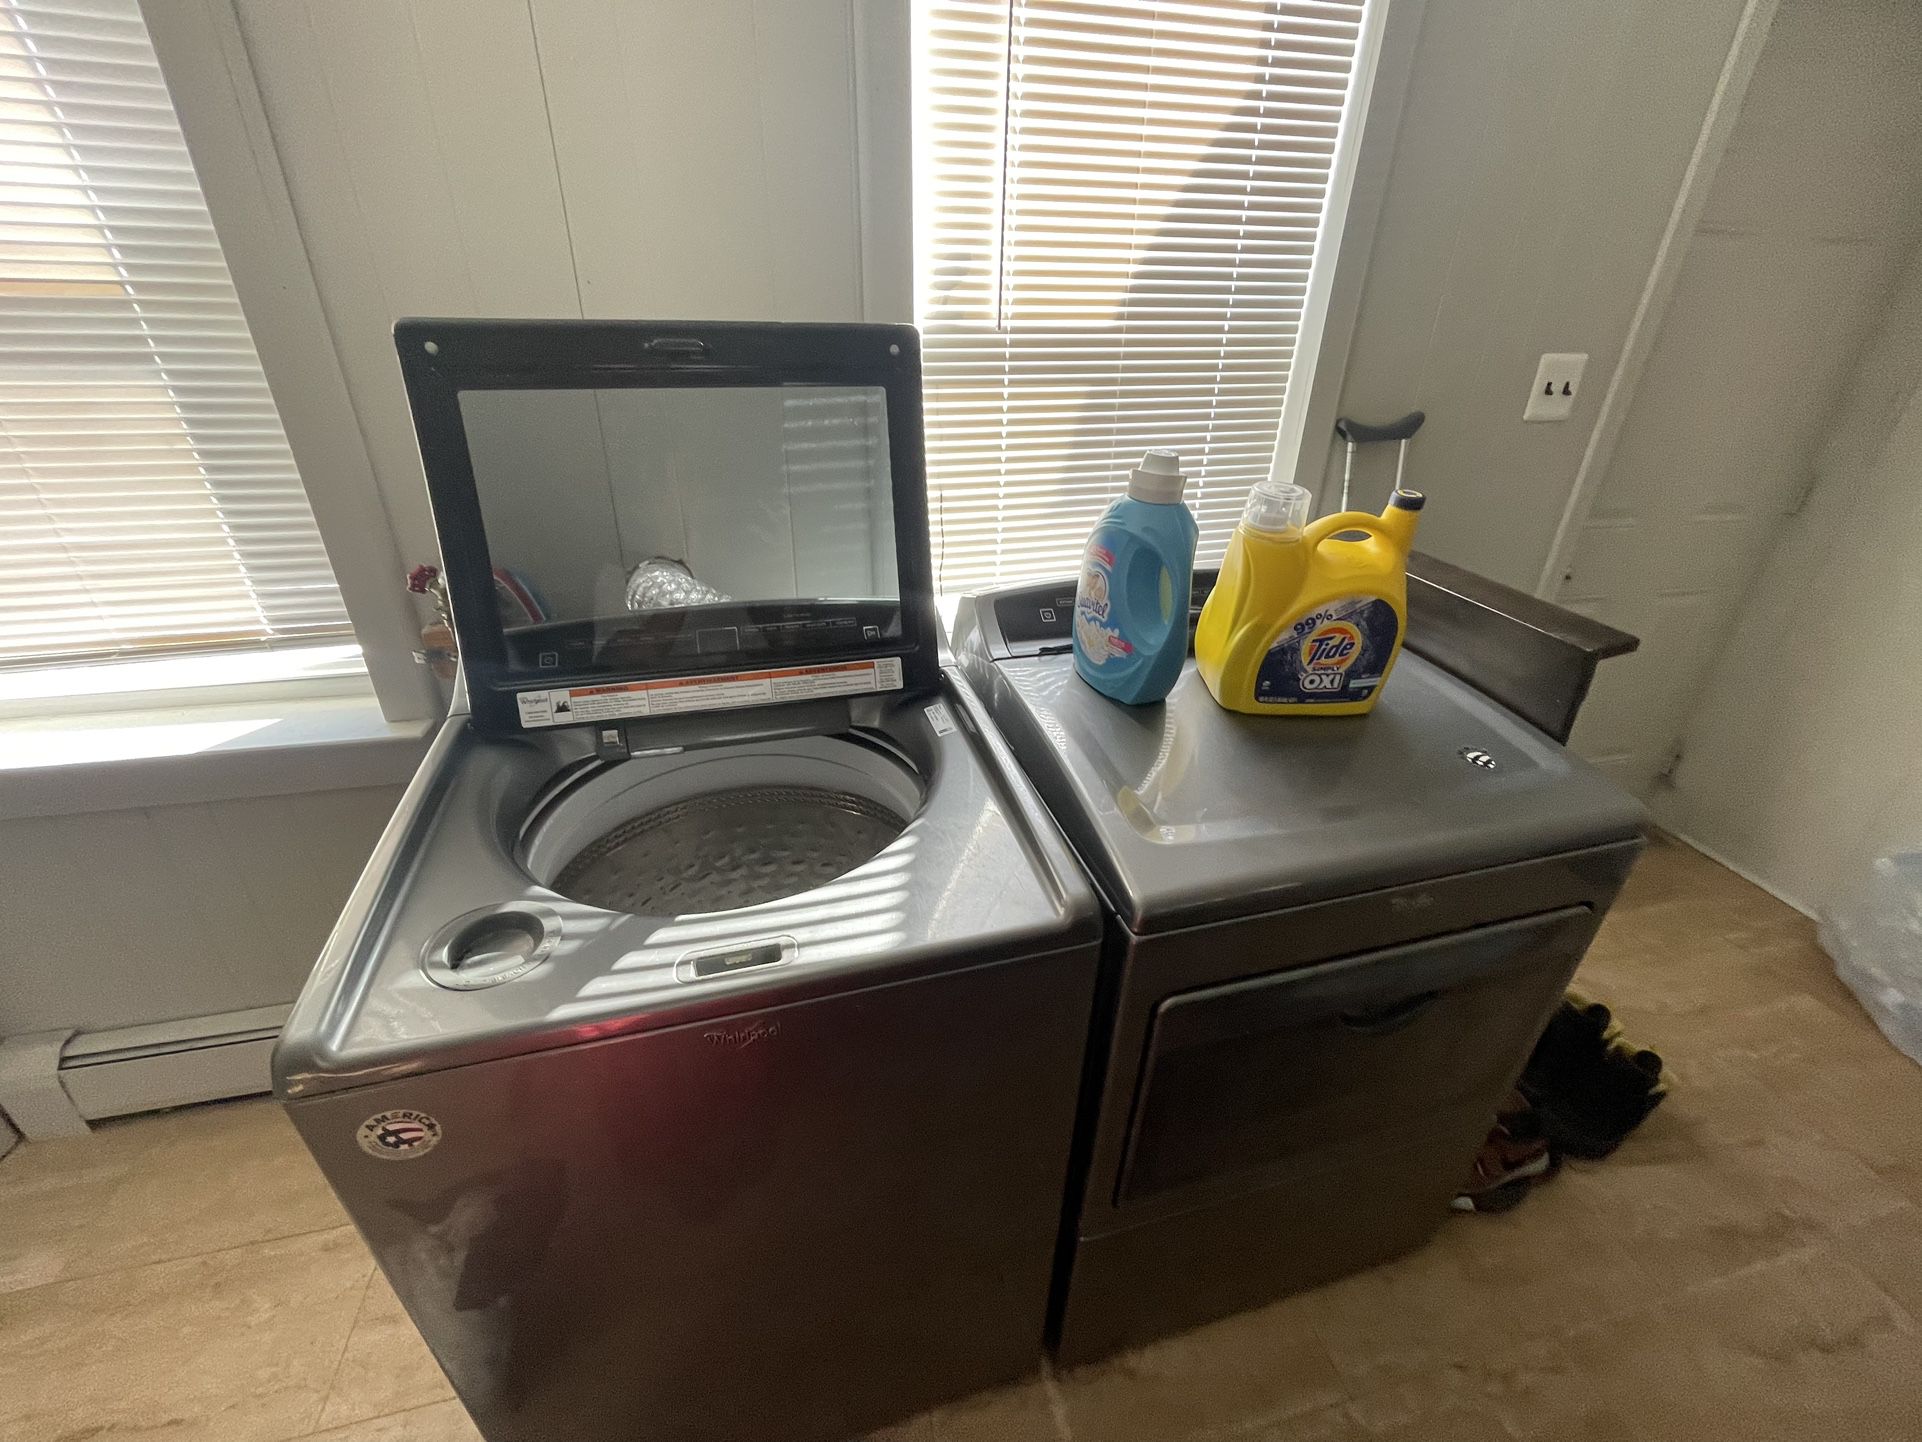 Washer/dryer Refrigerator